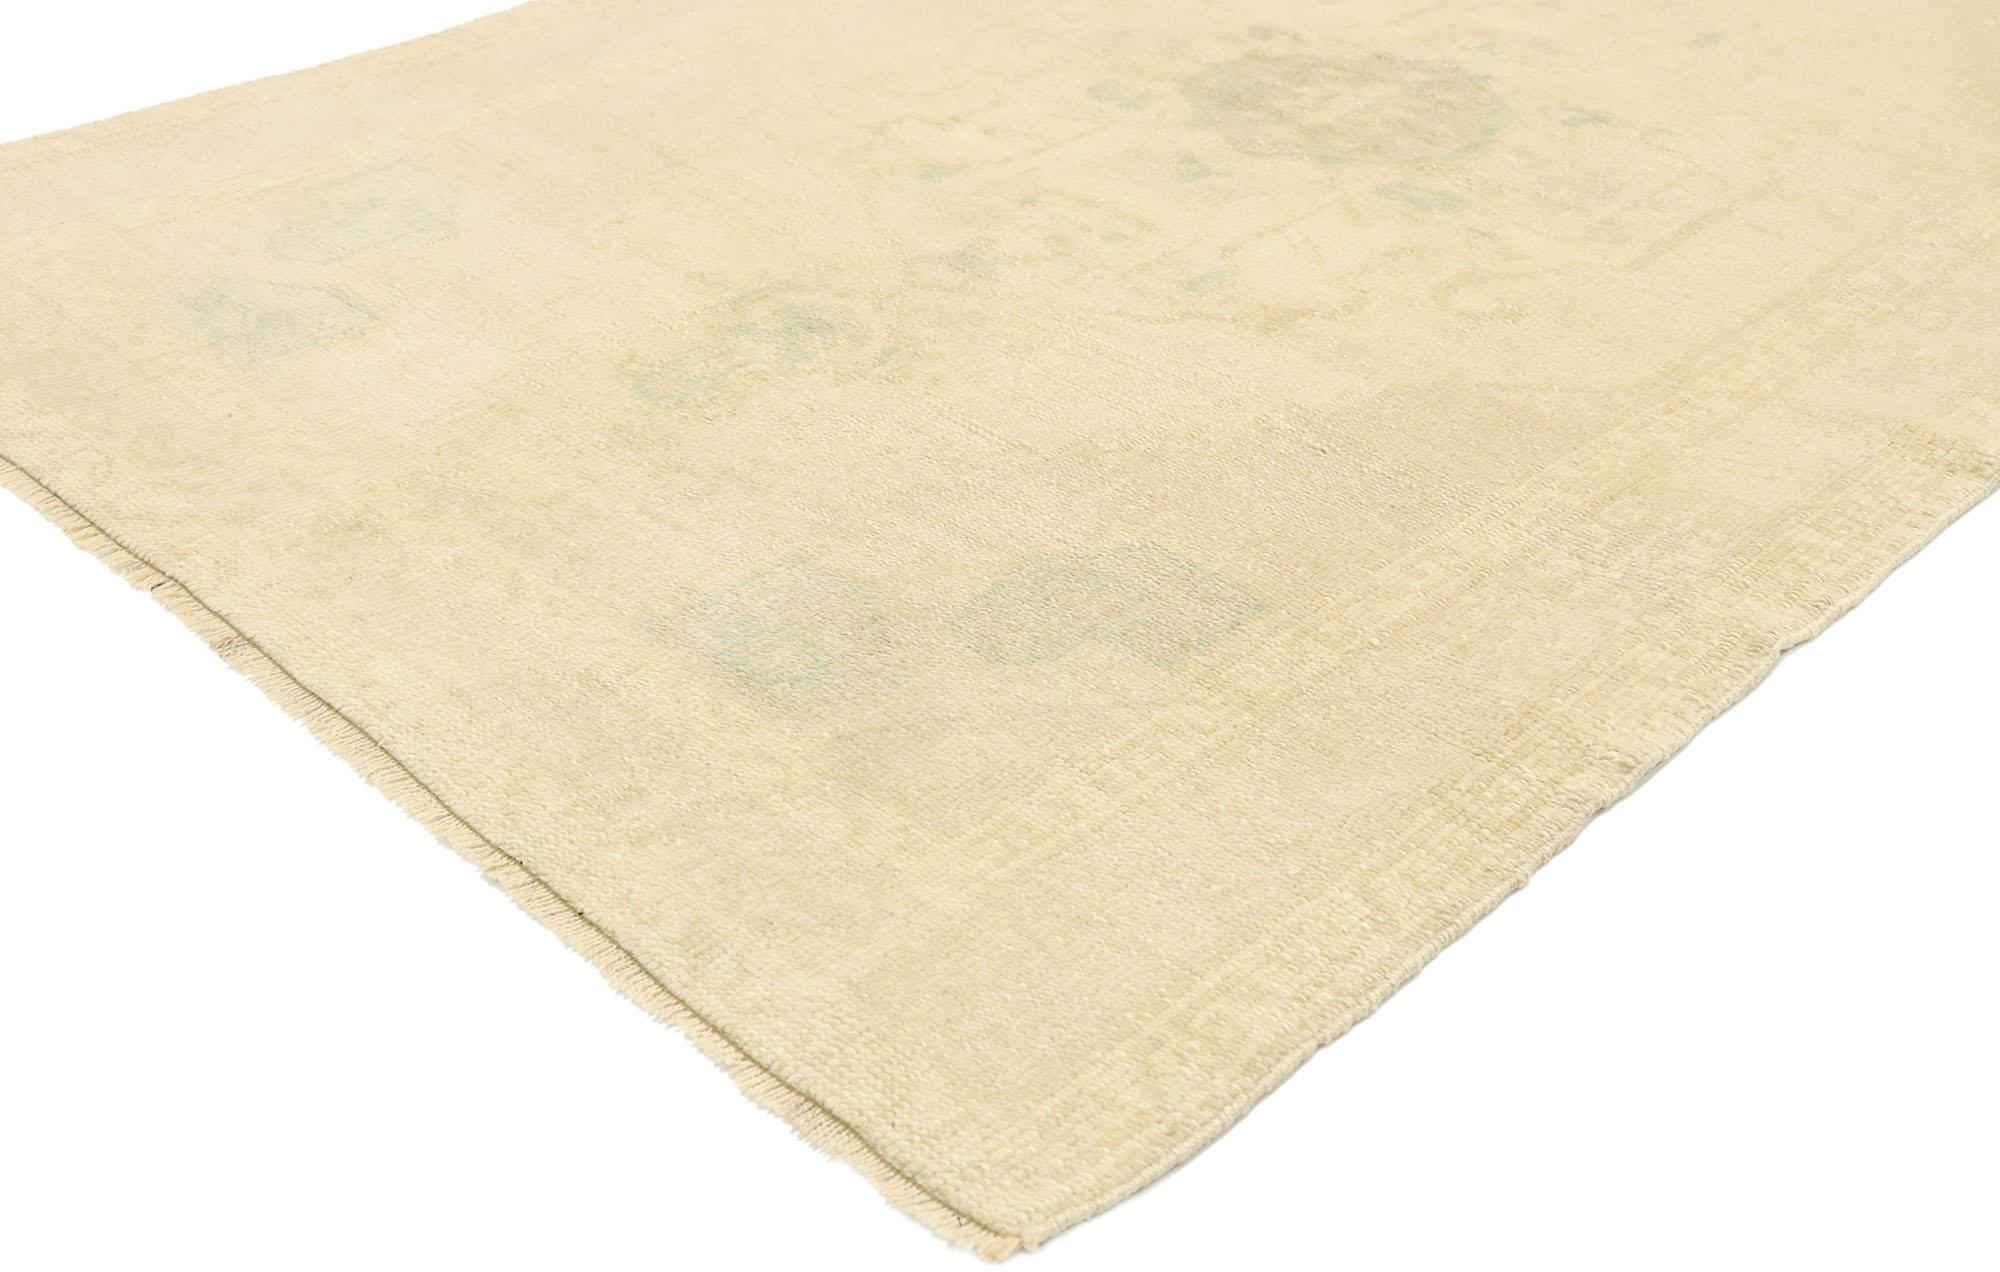 52971, tapis turc Oushak vintage, style international monochrome et minimaliste. Ce tapis Oushak turc vintage en laine nouée à la main est d'une beauté sans effort. Le champ lavé à l'ancienne présente un motif botanique délicatement tissé, avec un